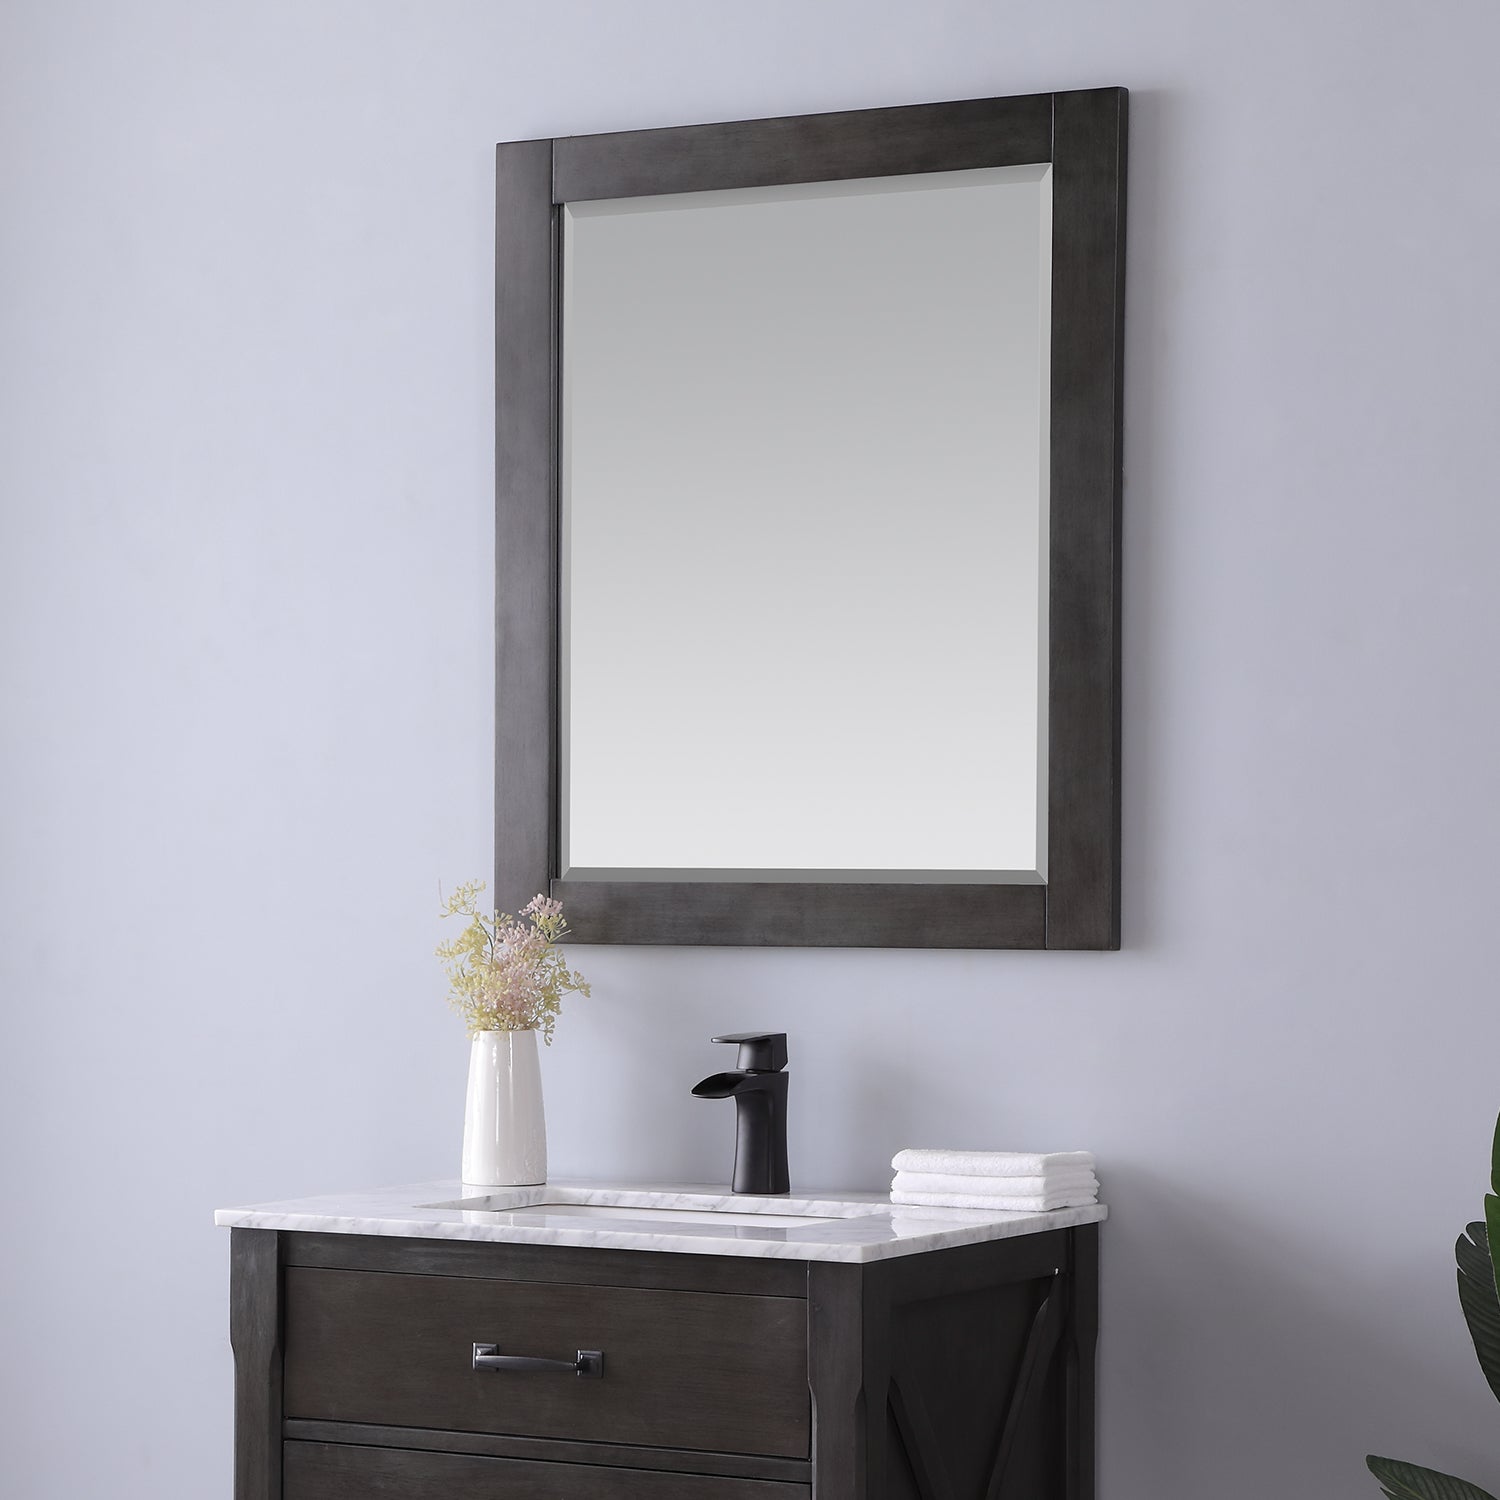 Maribella 28" Rectangular Bathroom Wood Framed Wall Mirror